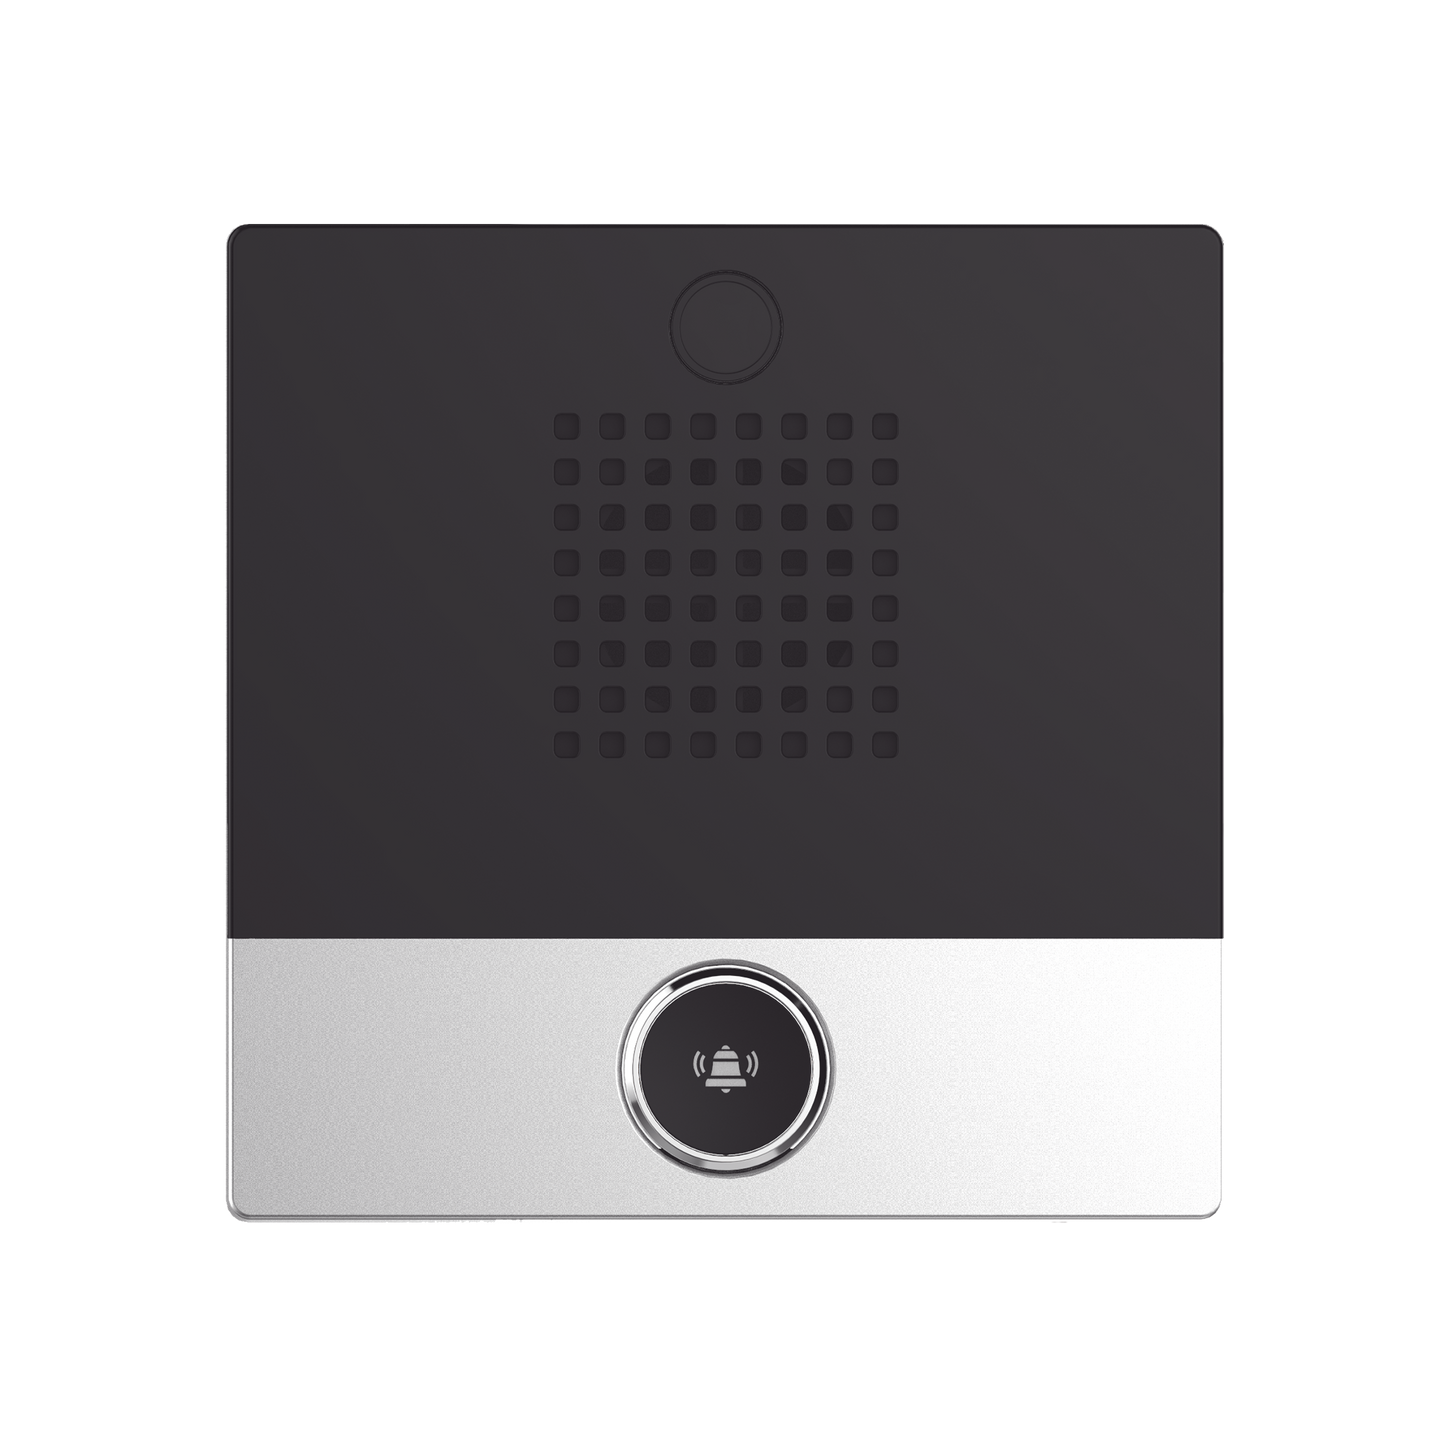 Mini Intercomunicador para hotelería y hospitales, con diseño elegante, PoE, 1 botón, 1 relevador integrado de salida y entrada.